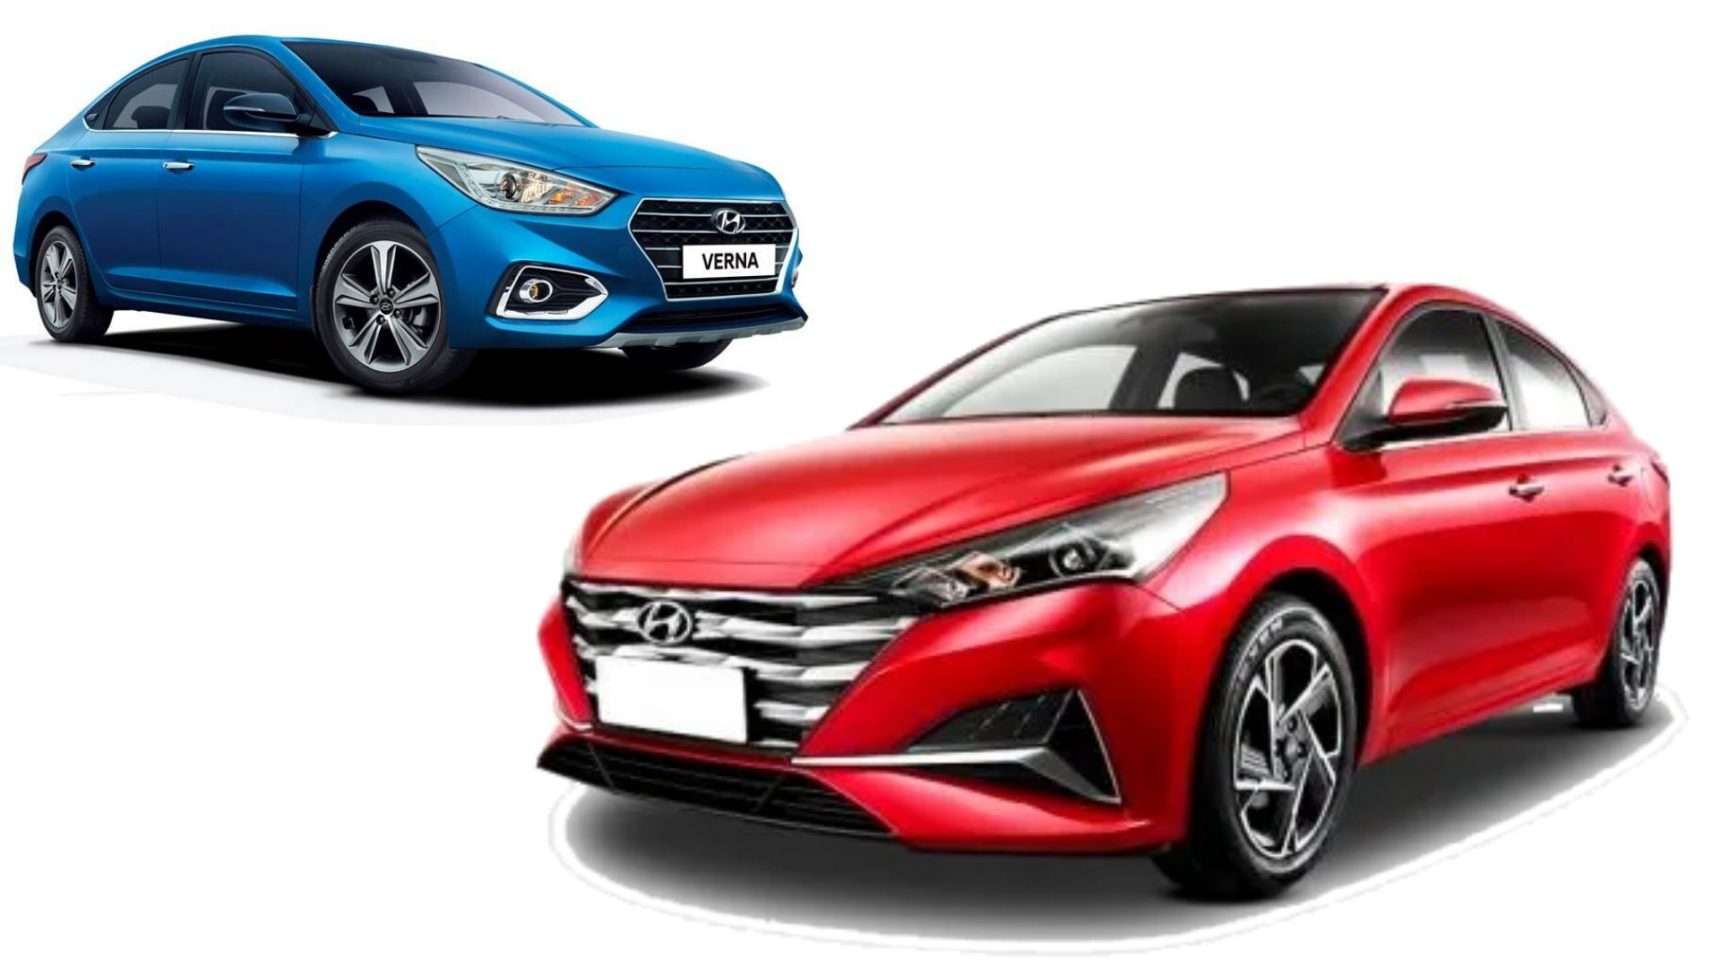 2020 Hyundai Verna Vs Current Gen Verna Design Specs Comparison